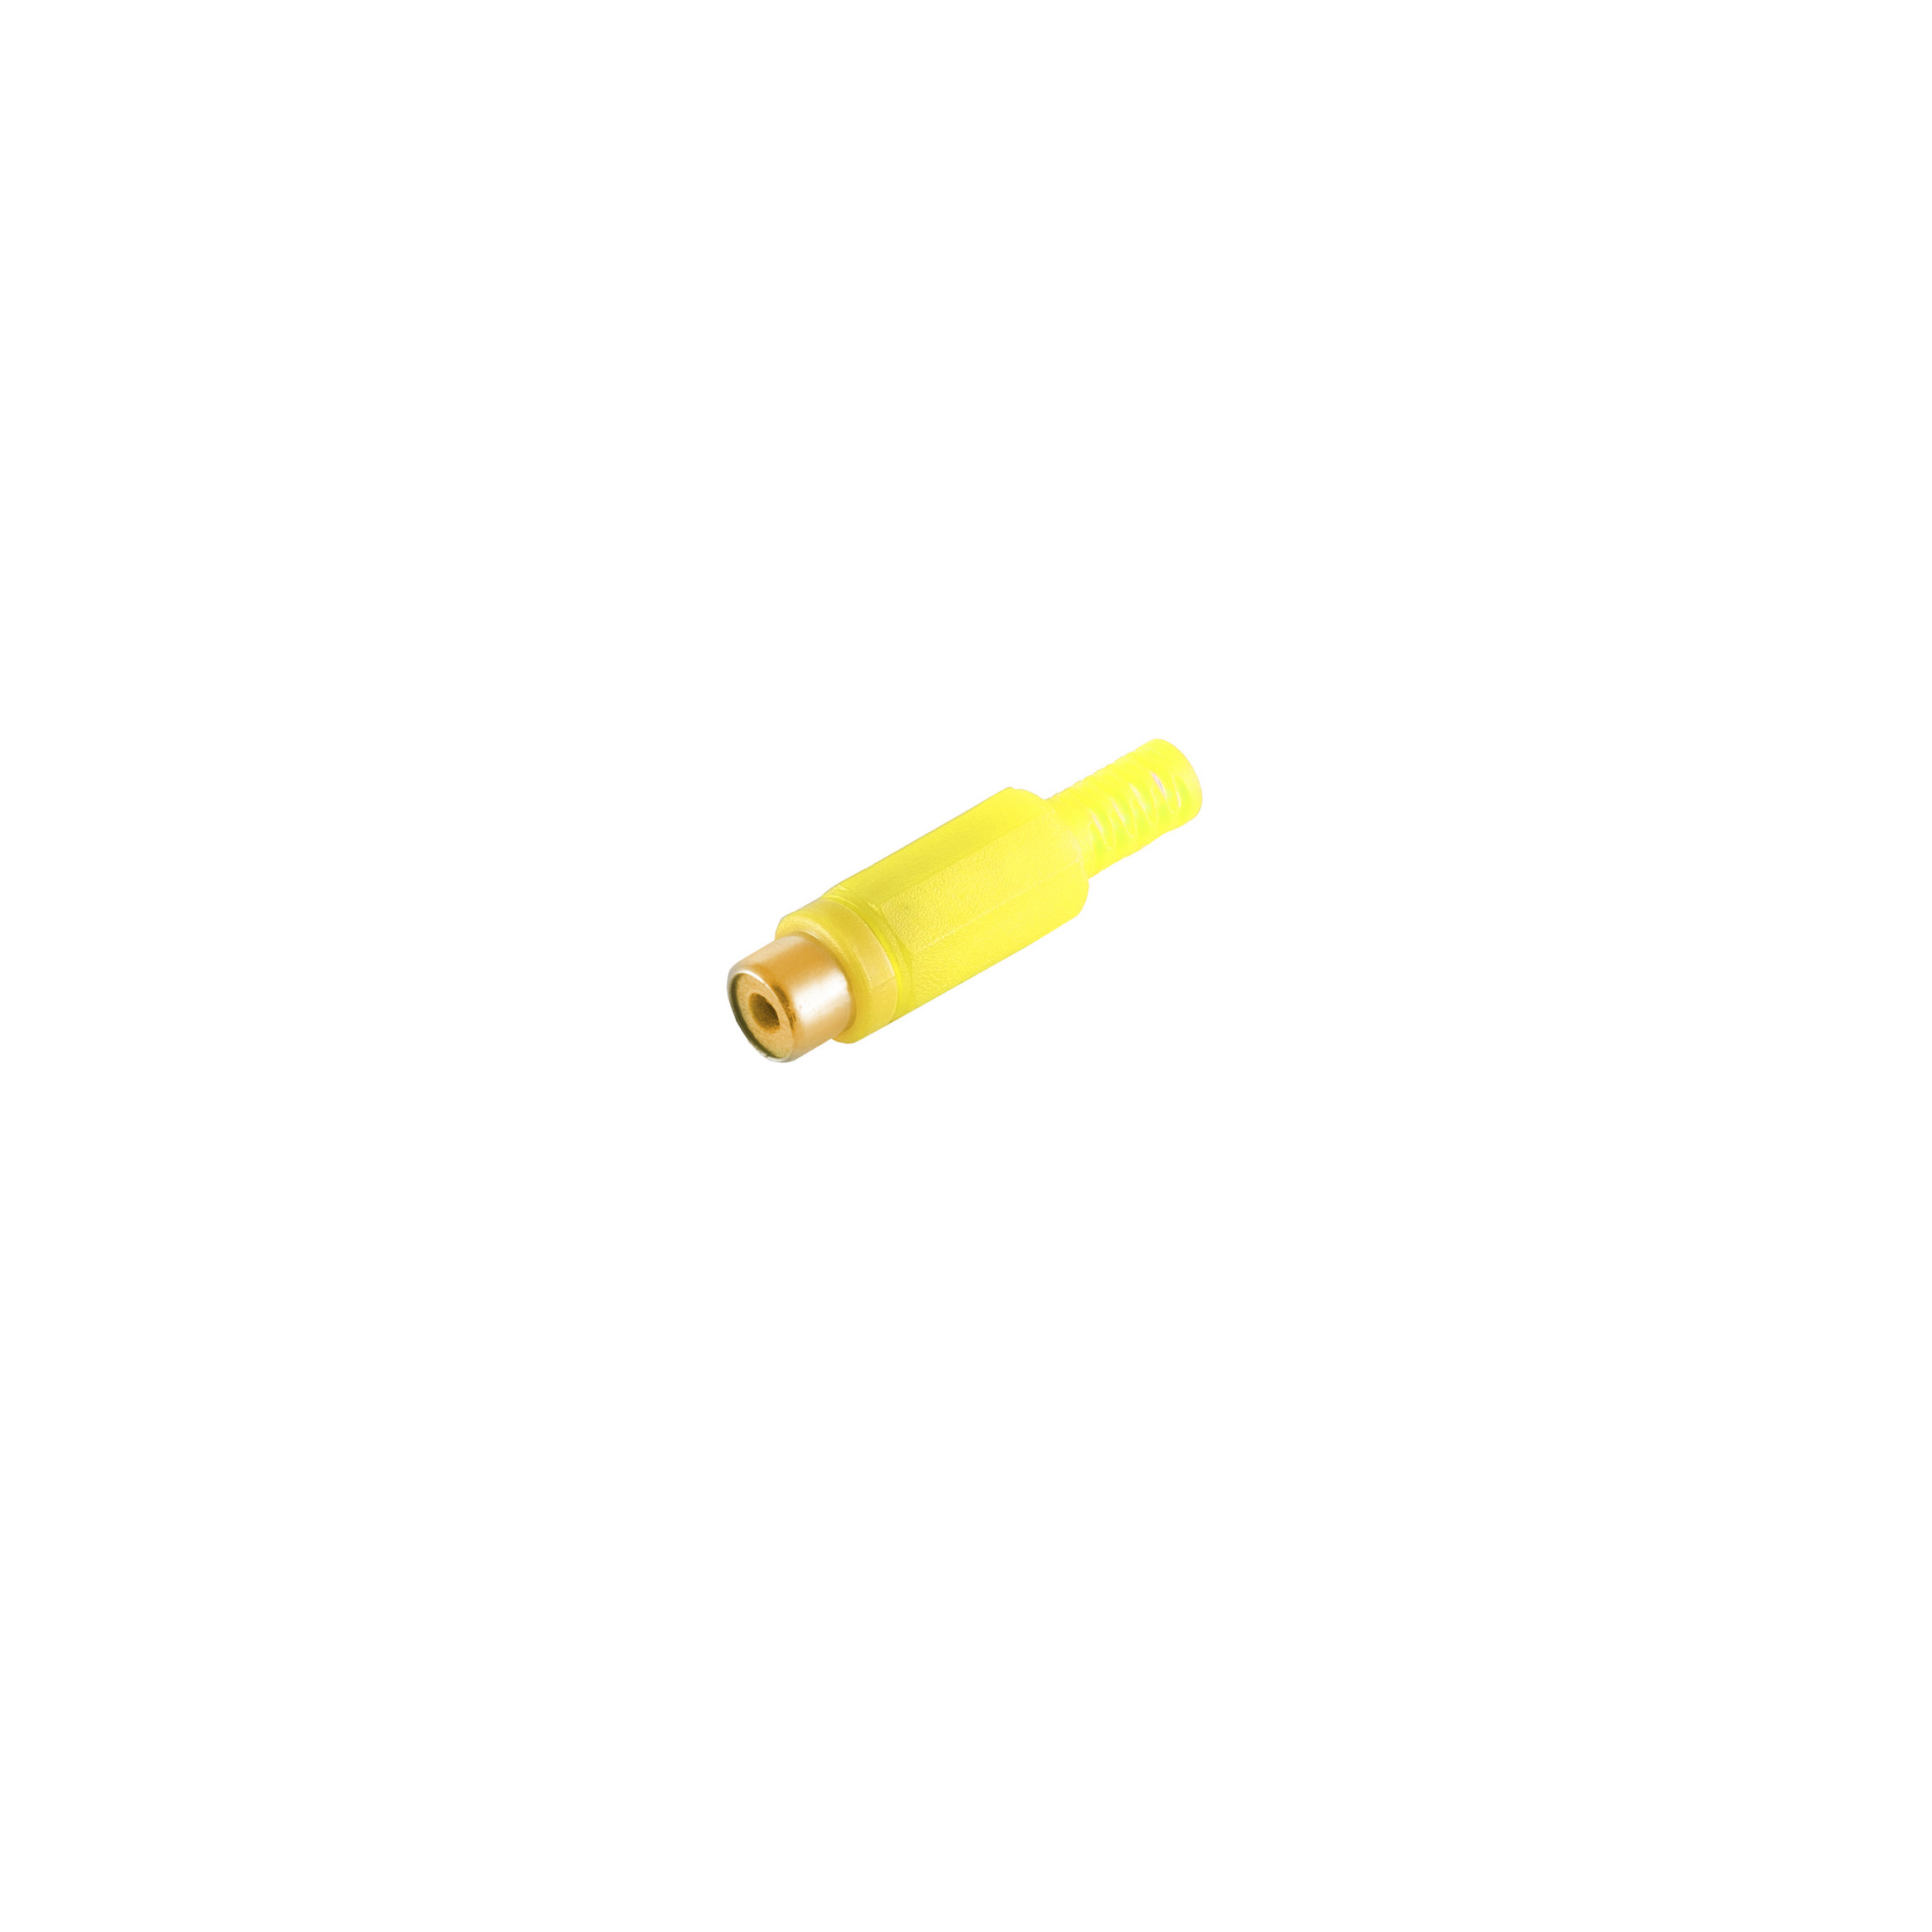 Cinch Cinchkupplung, S/CONN CONNECTIVITY MAXIMUM gelb, Kontakte vergoldet